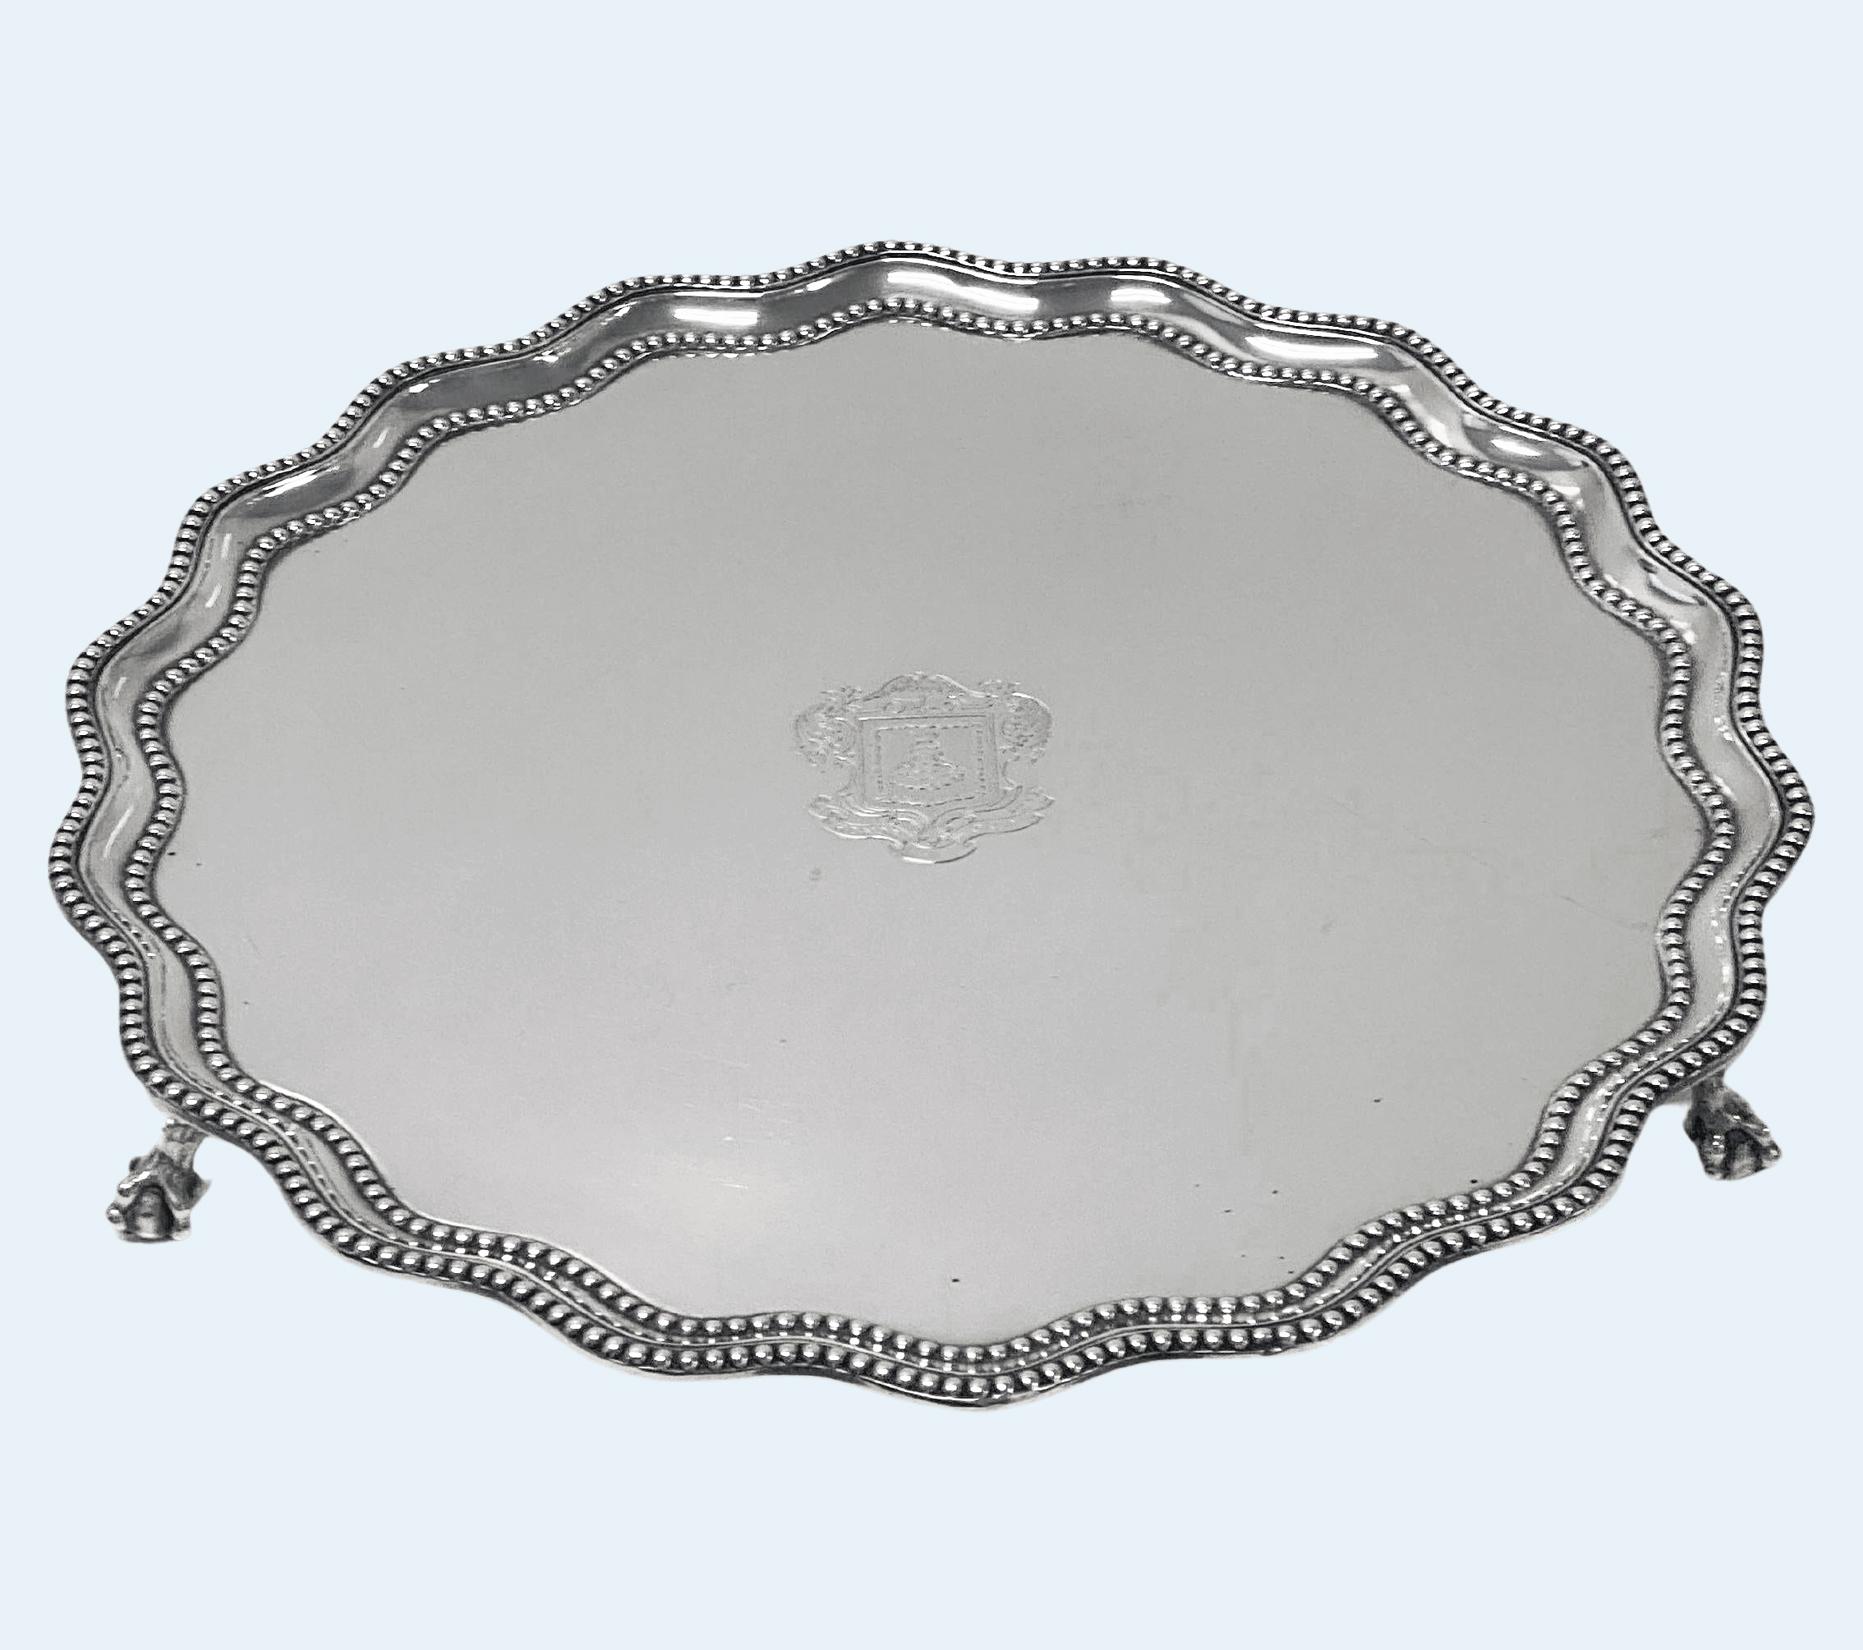 Mercers Company Garrard Antique Silver large Salver by James Garrard, London 1897.
De forme circulaire avec un bord ondulé en relief, reposant sur trois pieds griffes et boules, le dessous gravé 